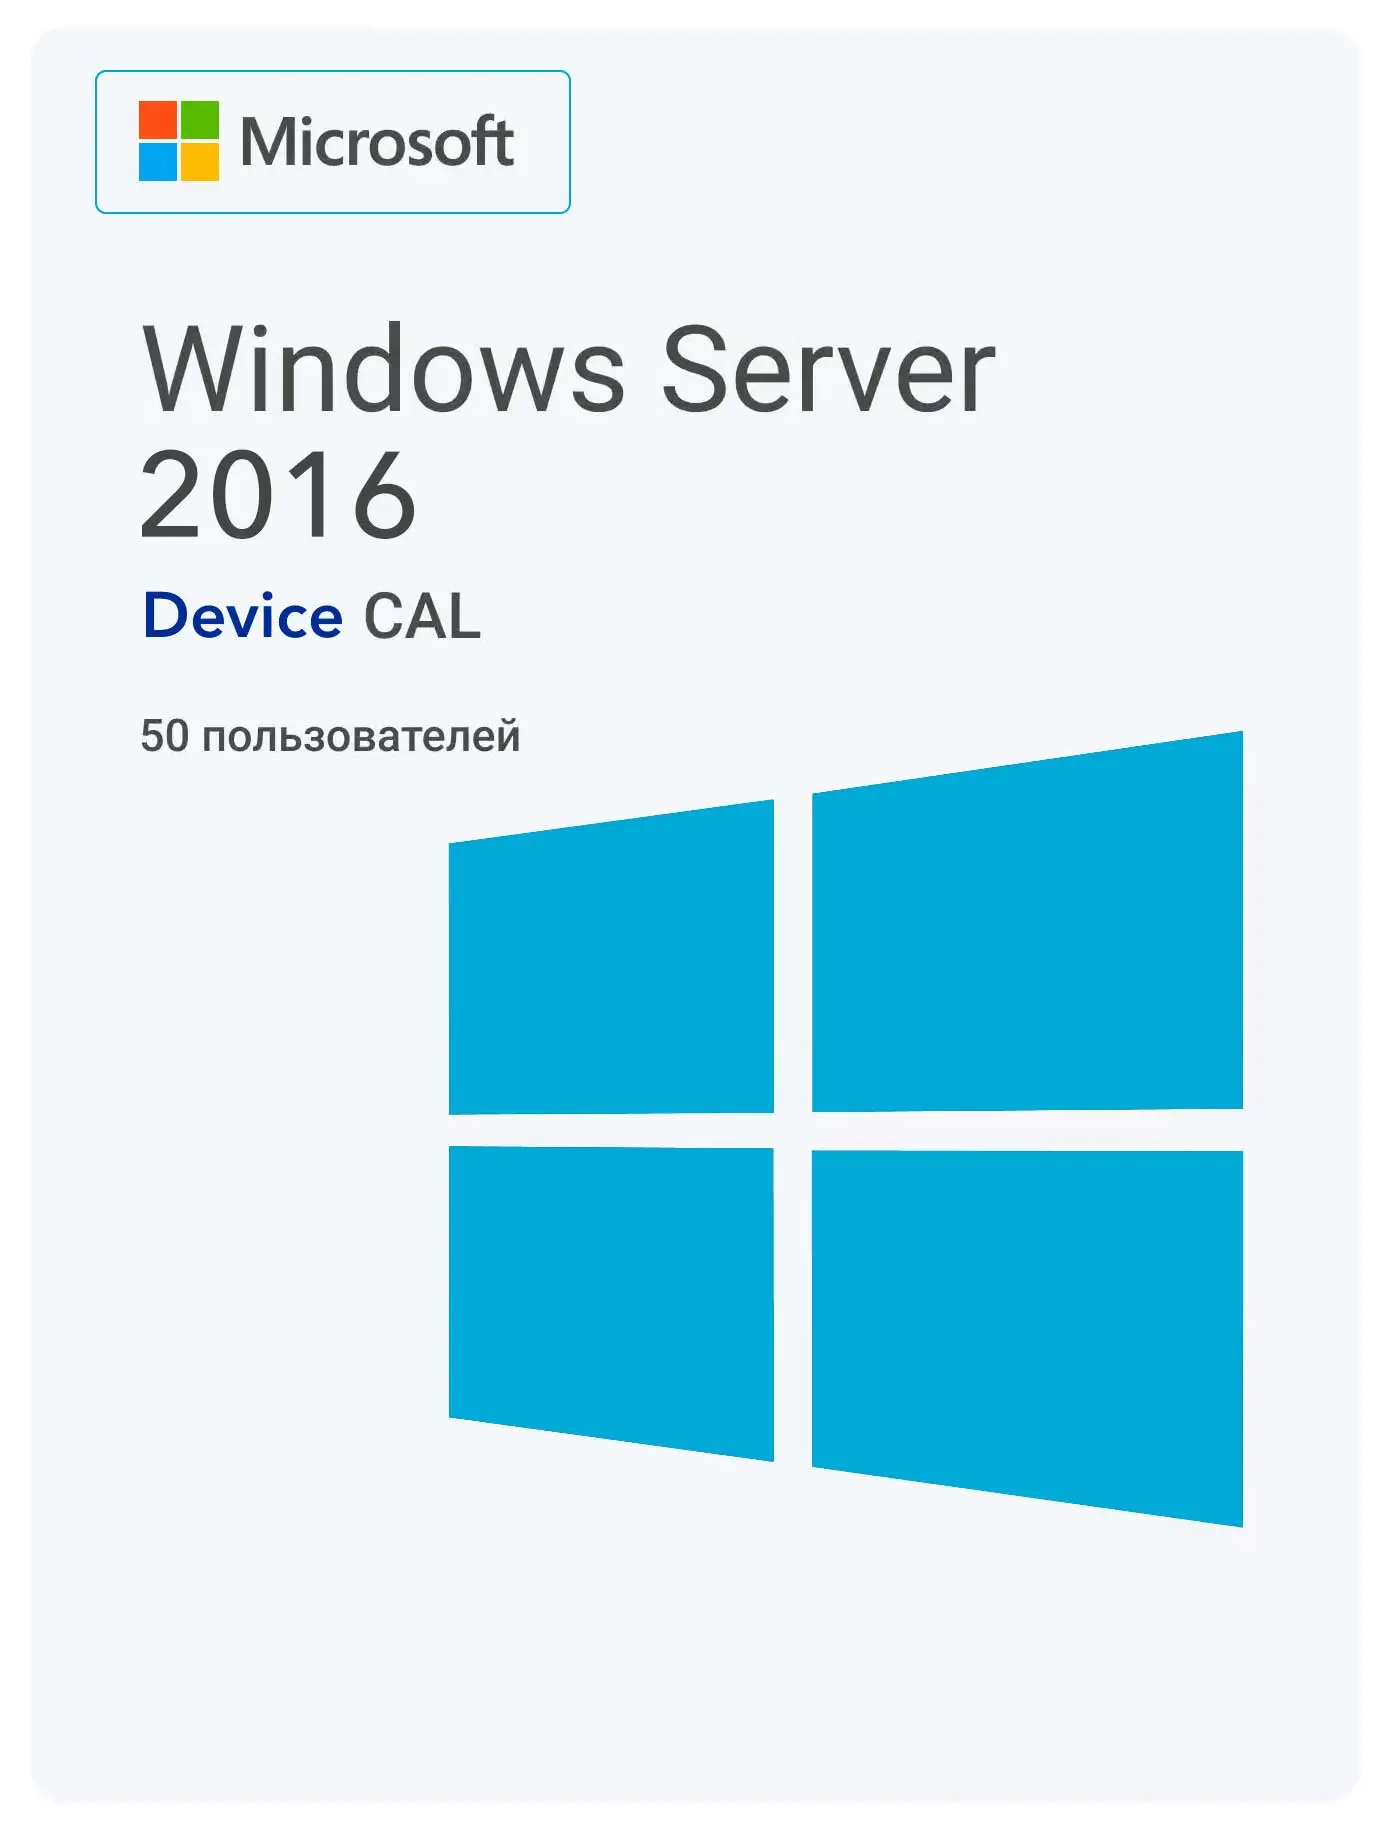 Windows Server 2016 RDS Device CAL (50 пользователей)